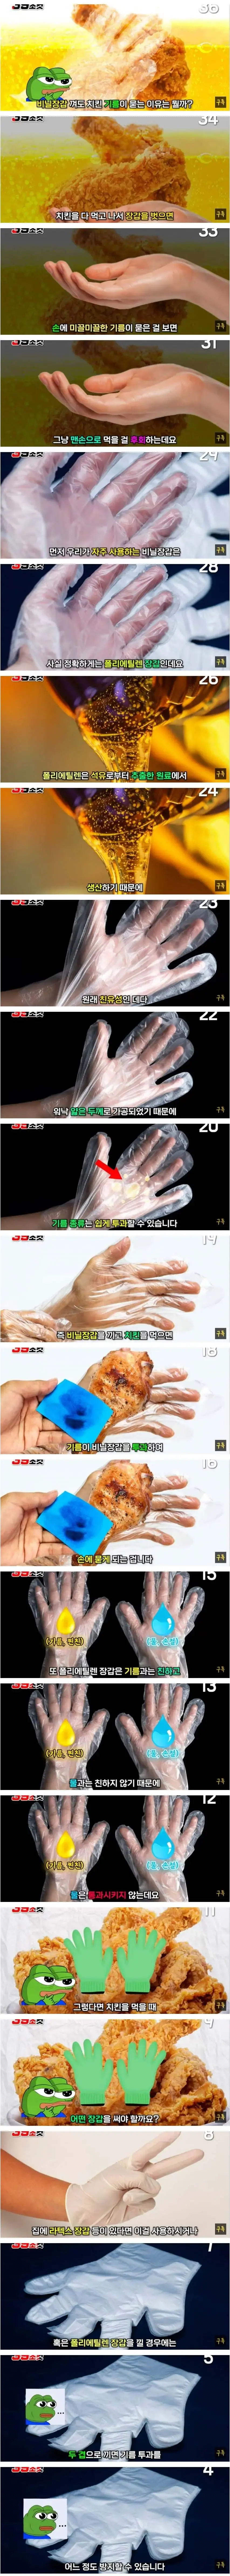 치킨 먹을 때 비닐장갑을 껴도 기름이 묻는 이유 | mbong.kr 엠봉